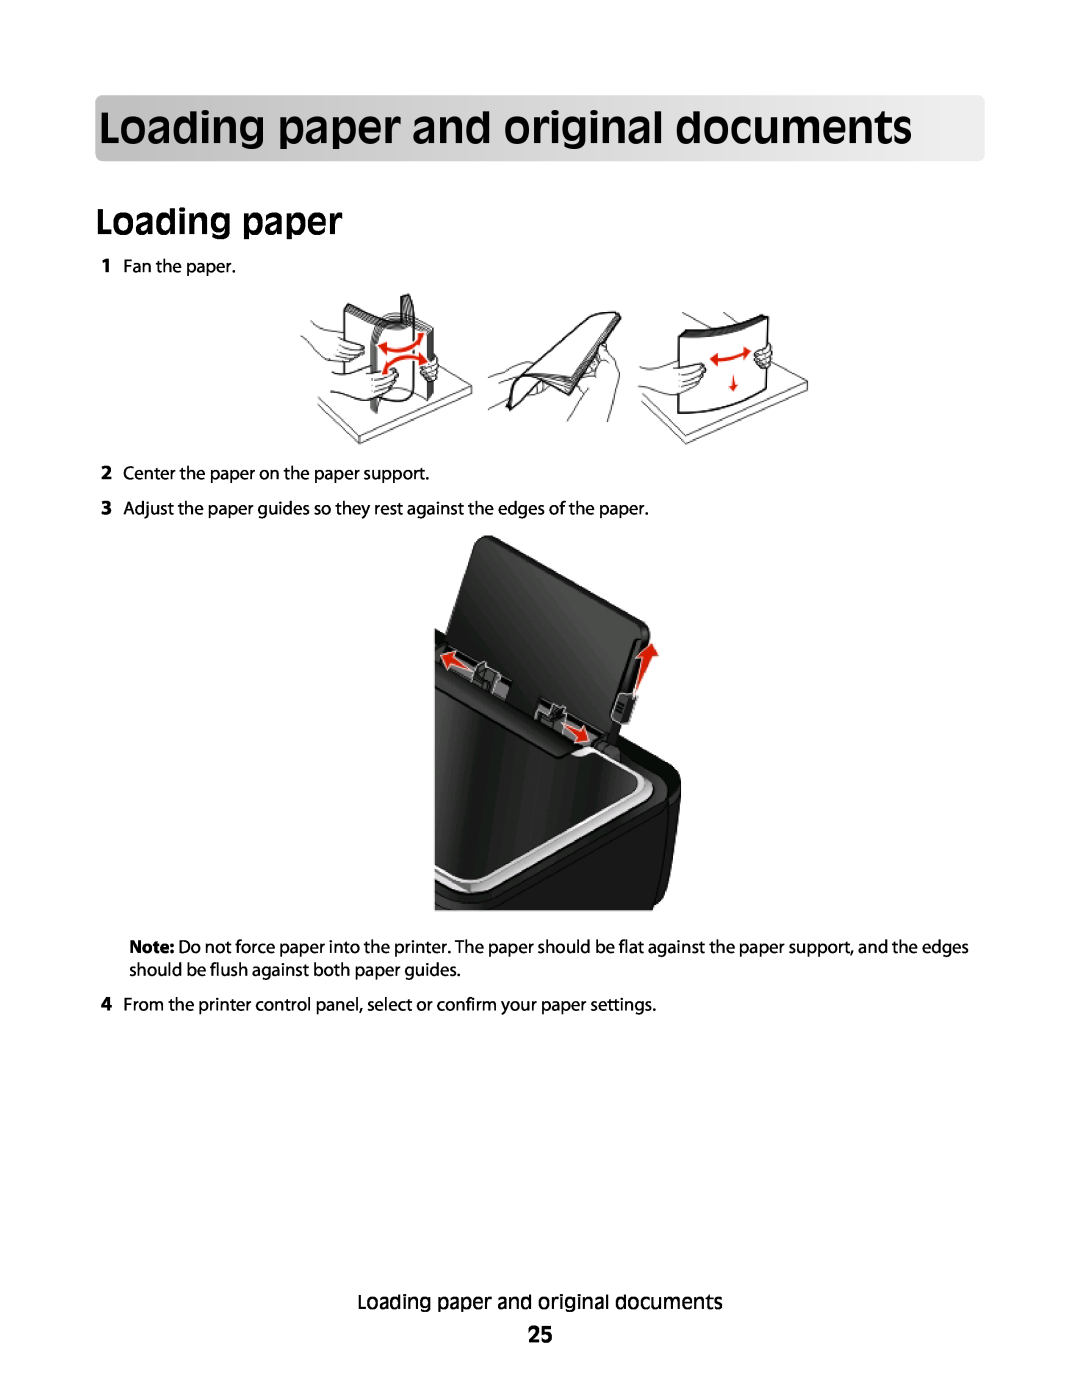 Lexmark 30E, S500, 301 manual Loading paperandoriginaldocuments 